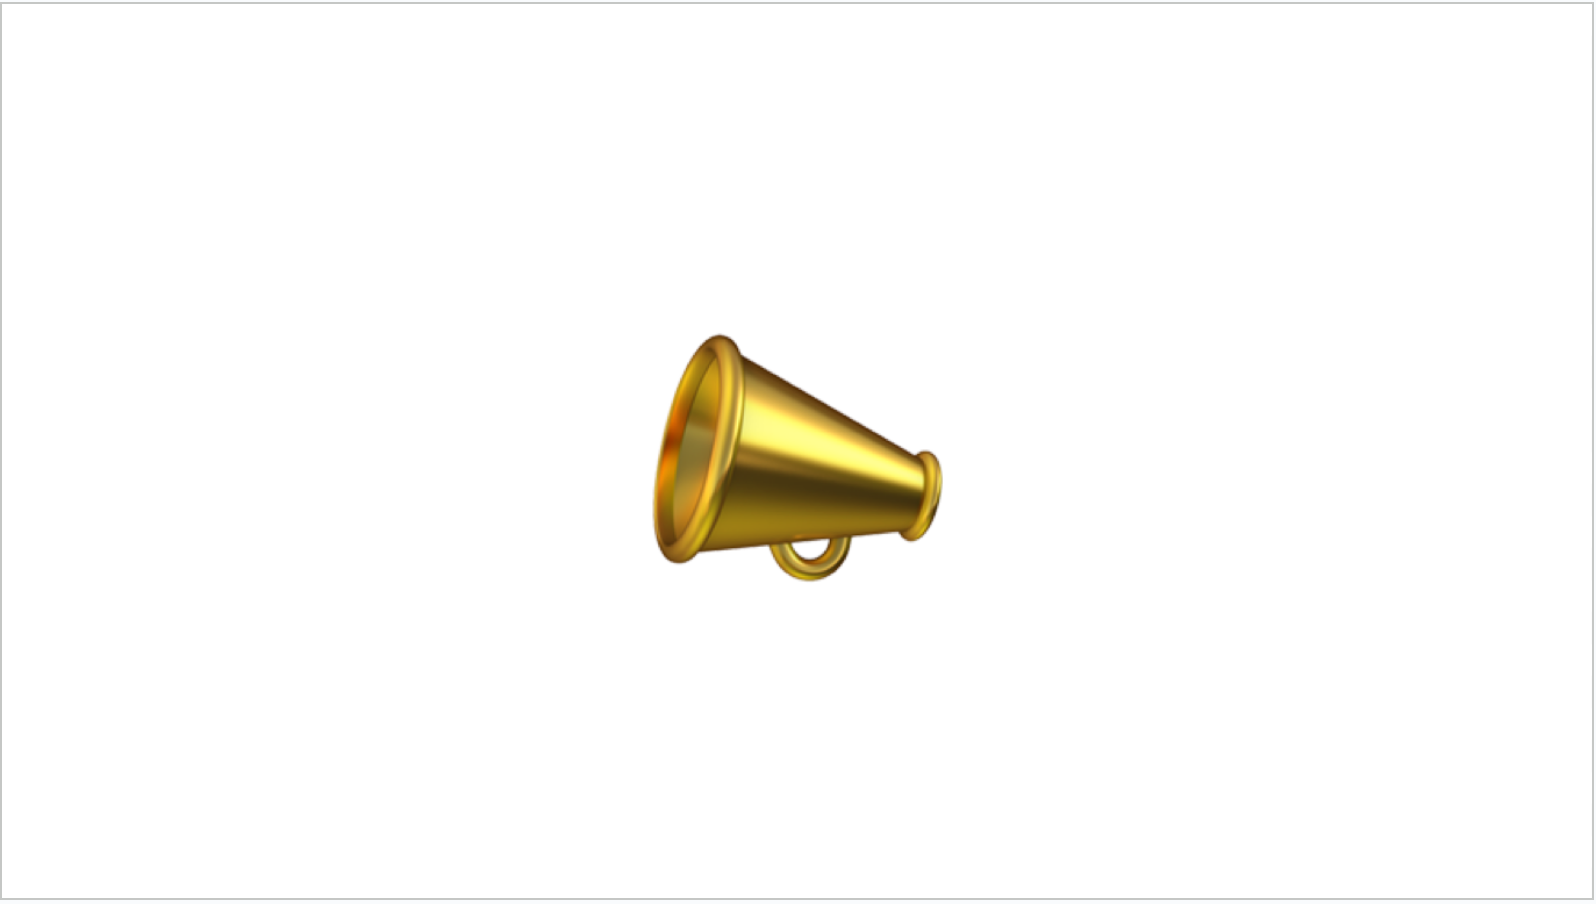 A megaphone emoji